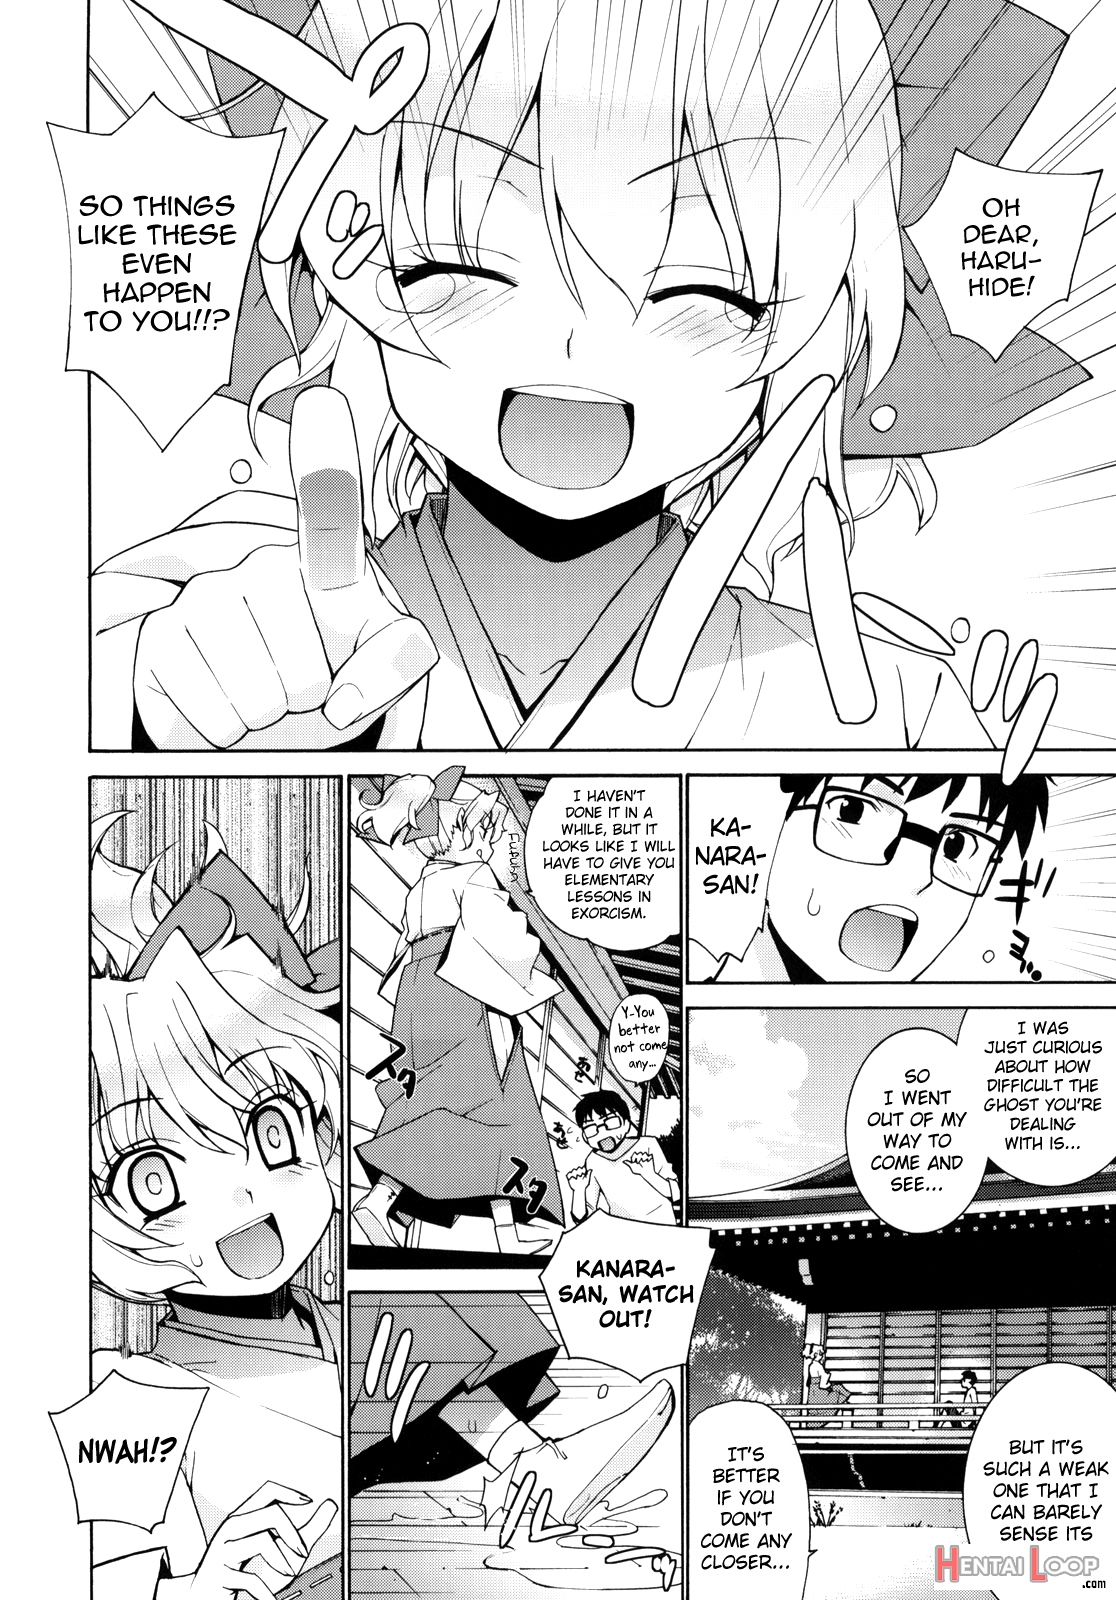 Kanara-sama No Nichijou 2 page 3